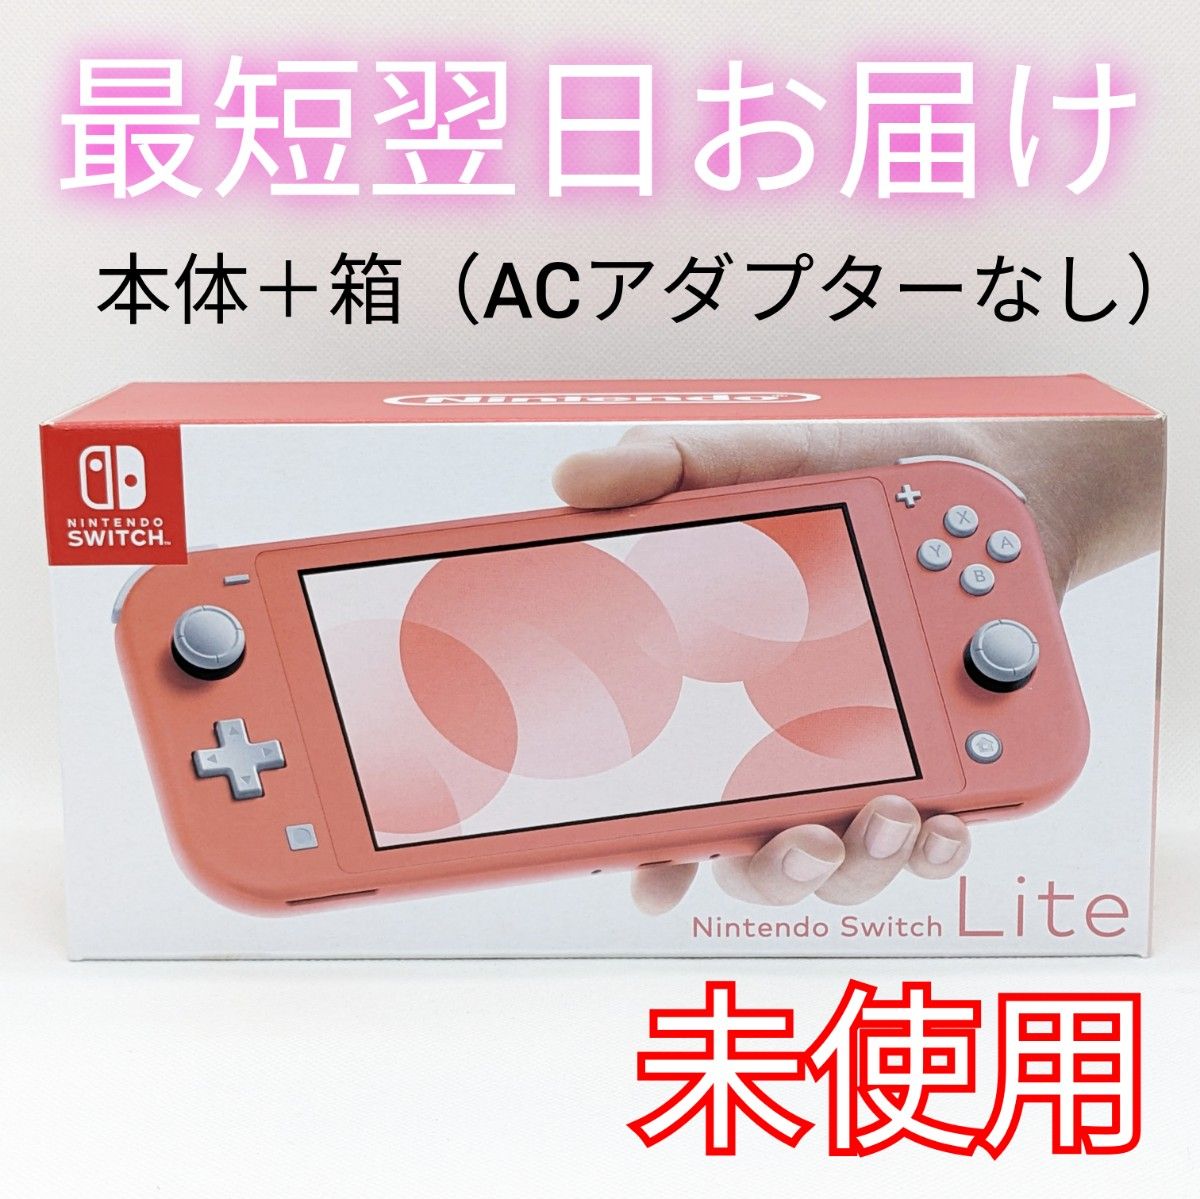 【未使用】Nintendo Switch Lite コーラル 本体と箱のみ 保証書付き 箱傷みあり スイッチライト